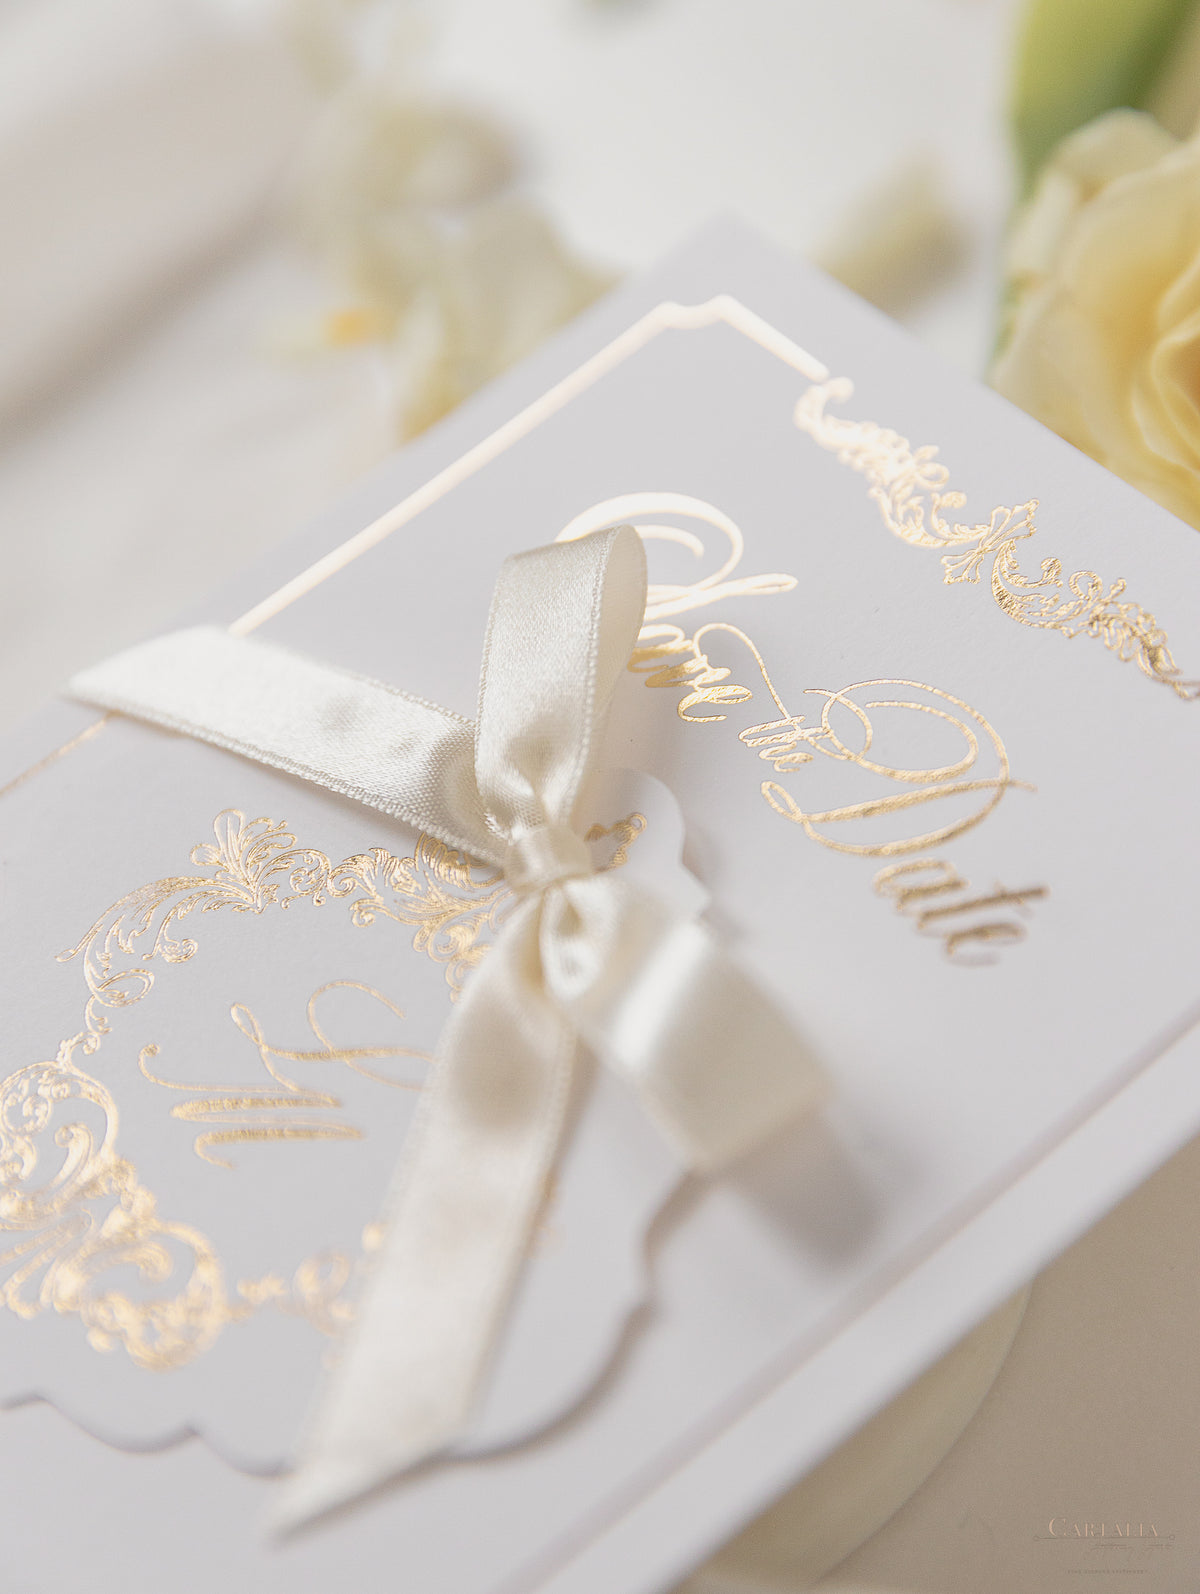 Tarjeta y etiqueta de lámina dorada de lujo con monograma y cinta de raso para guardar la fecha